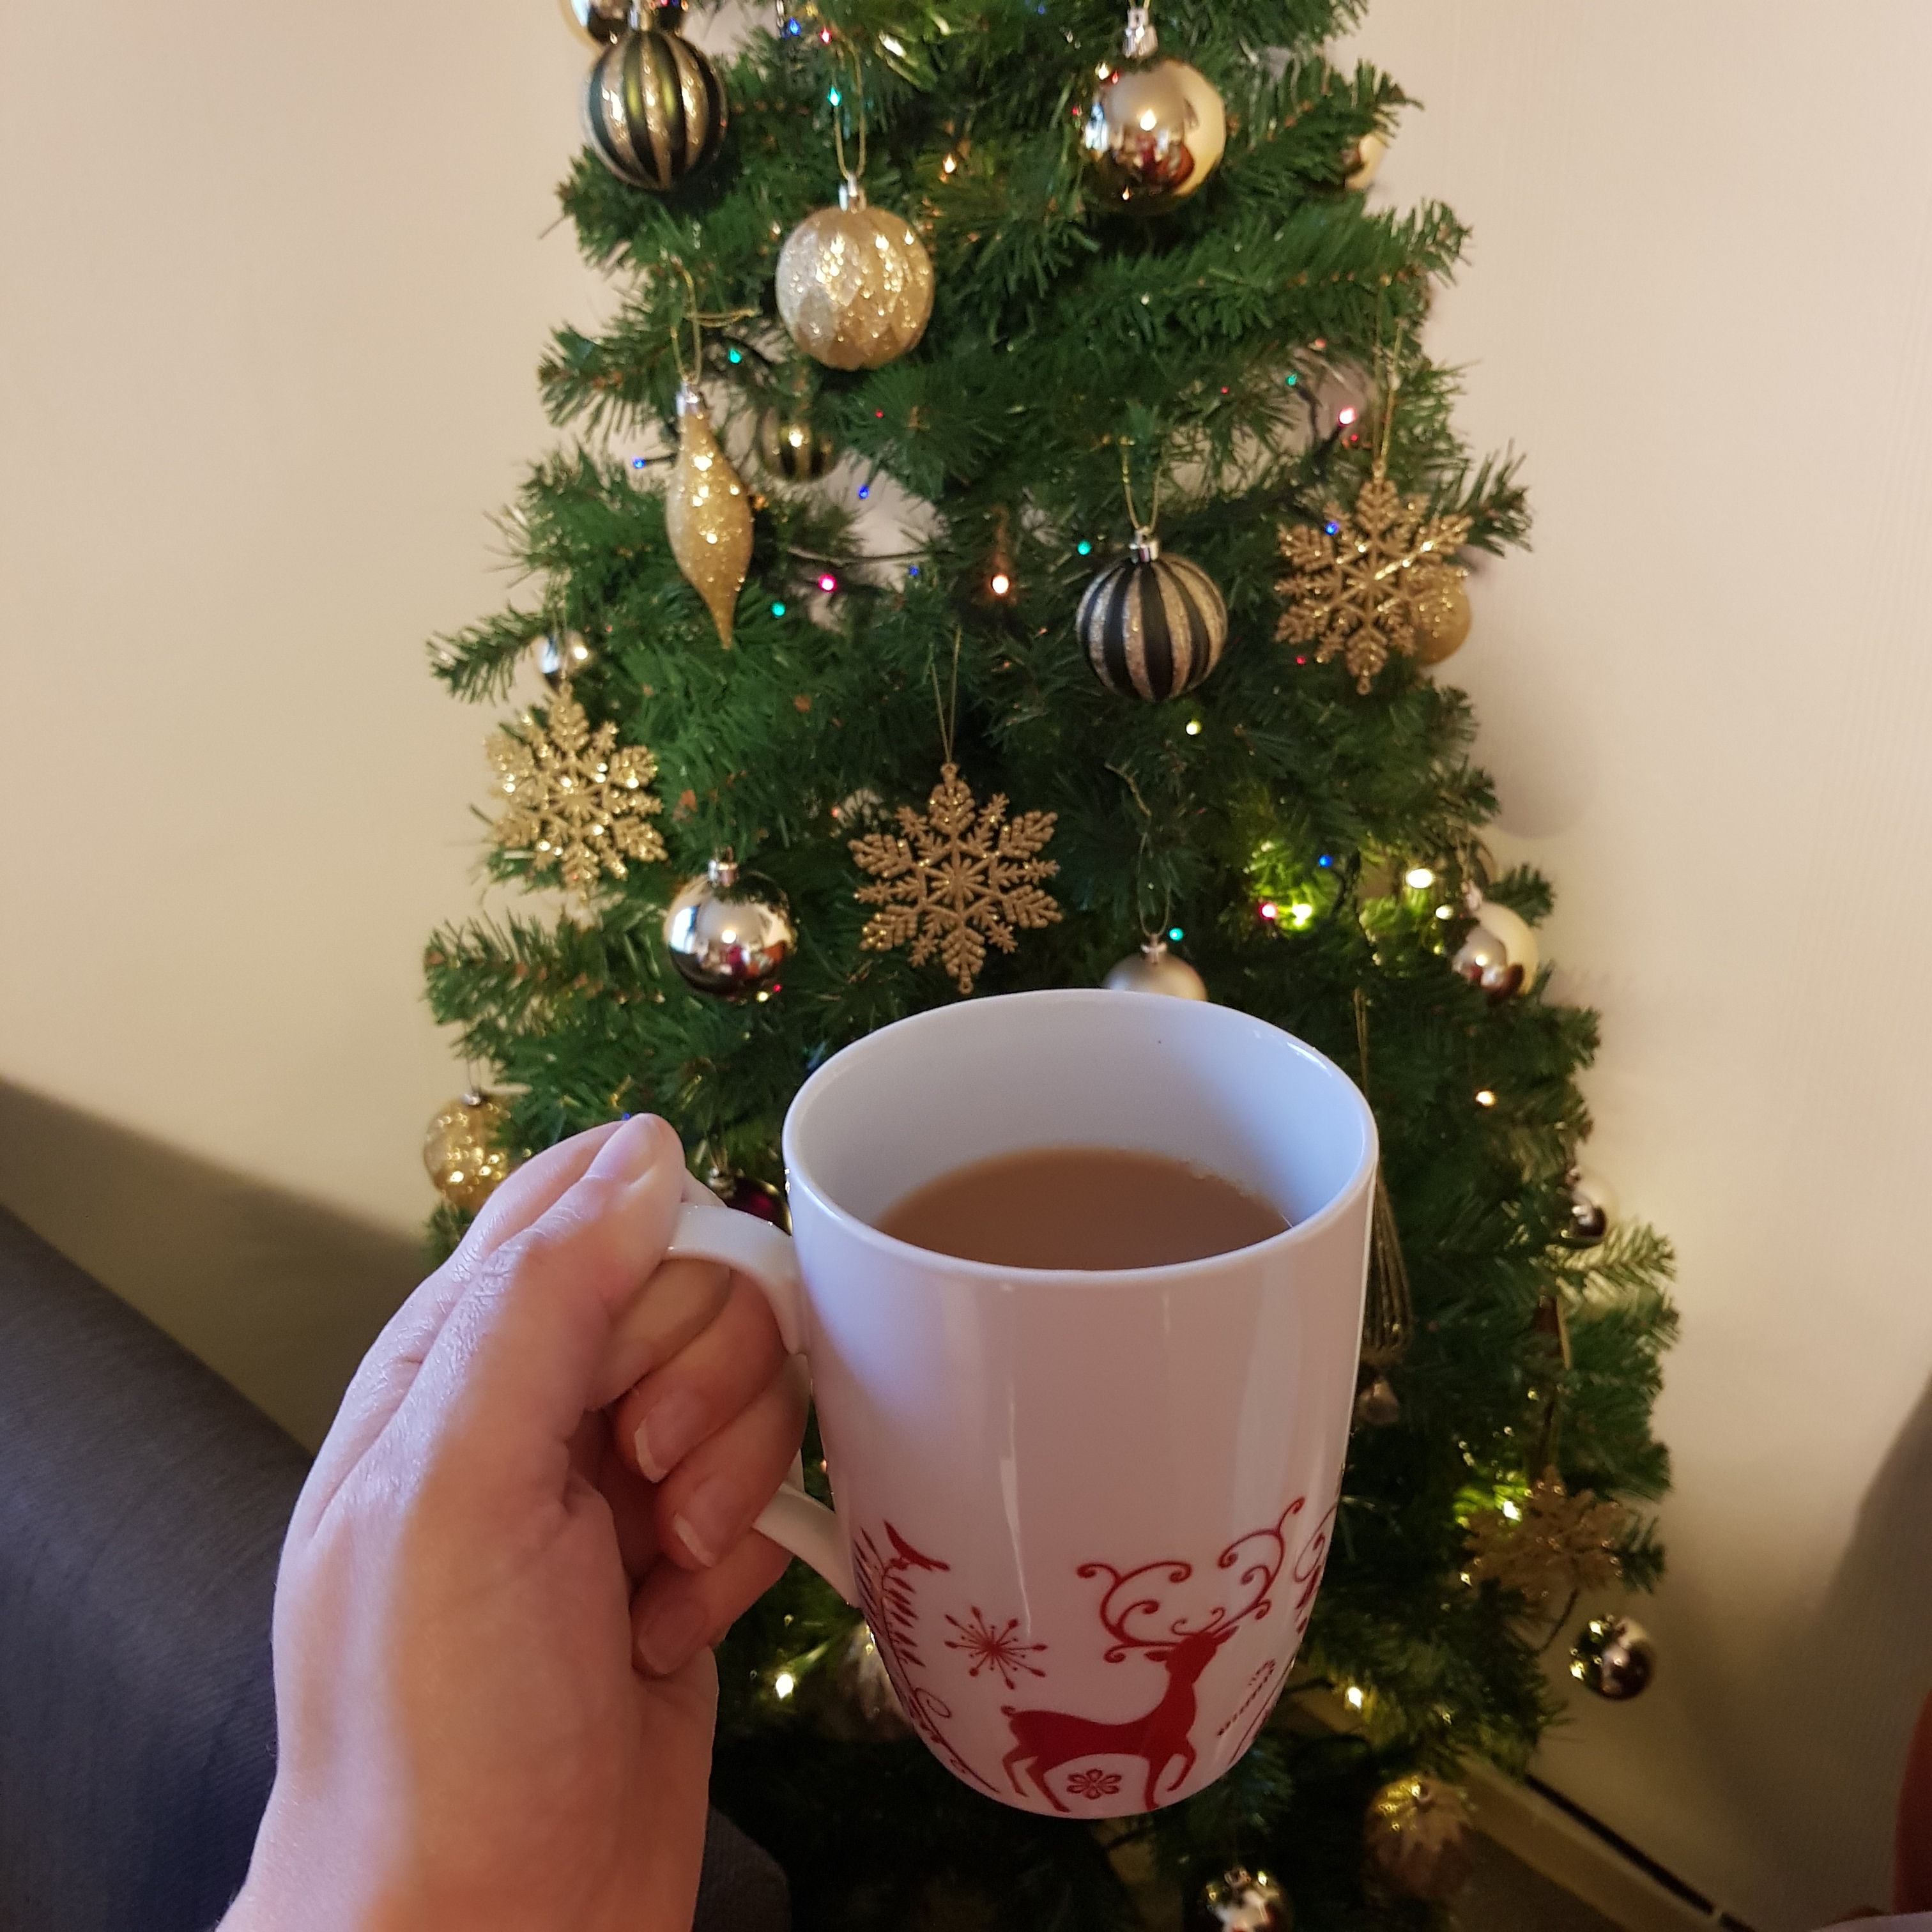 Christmas morning tea